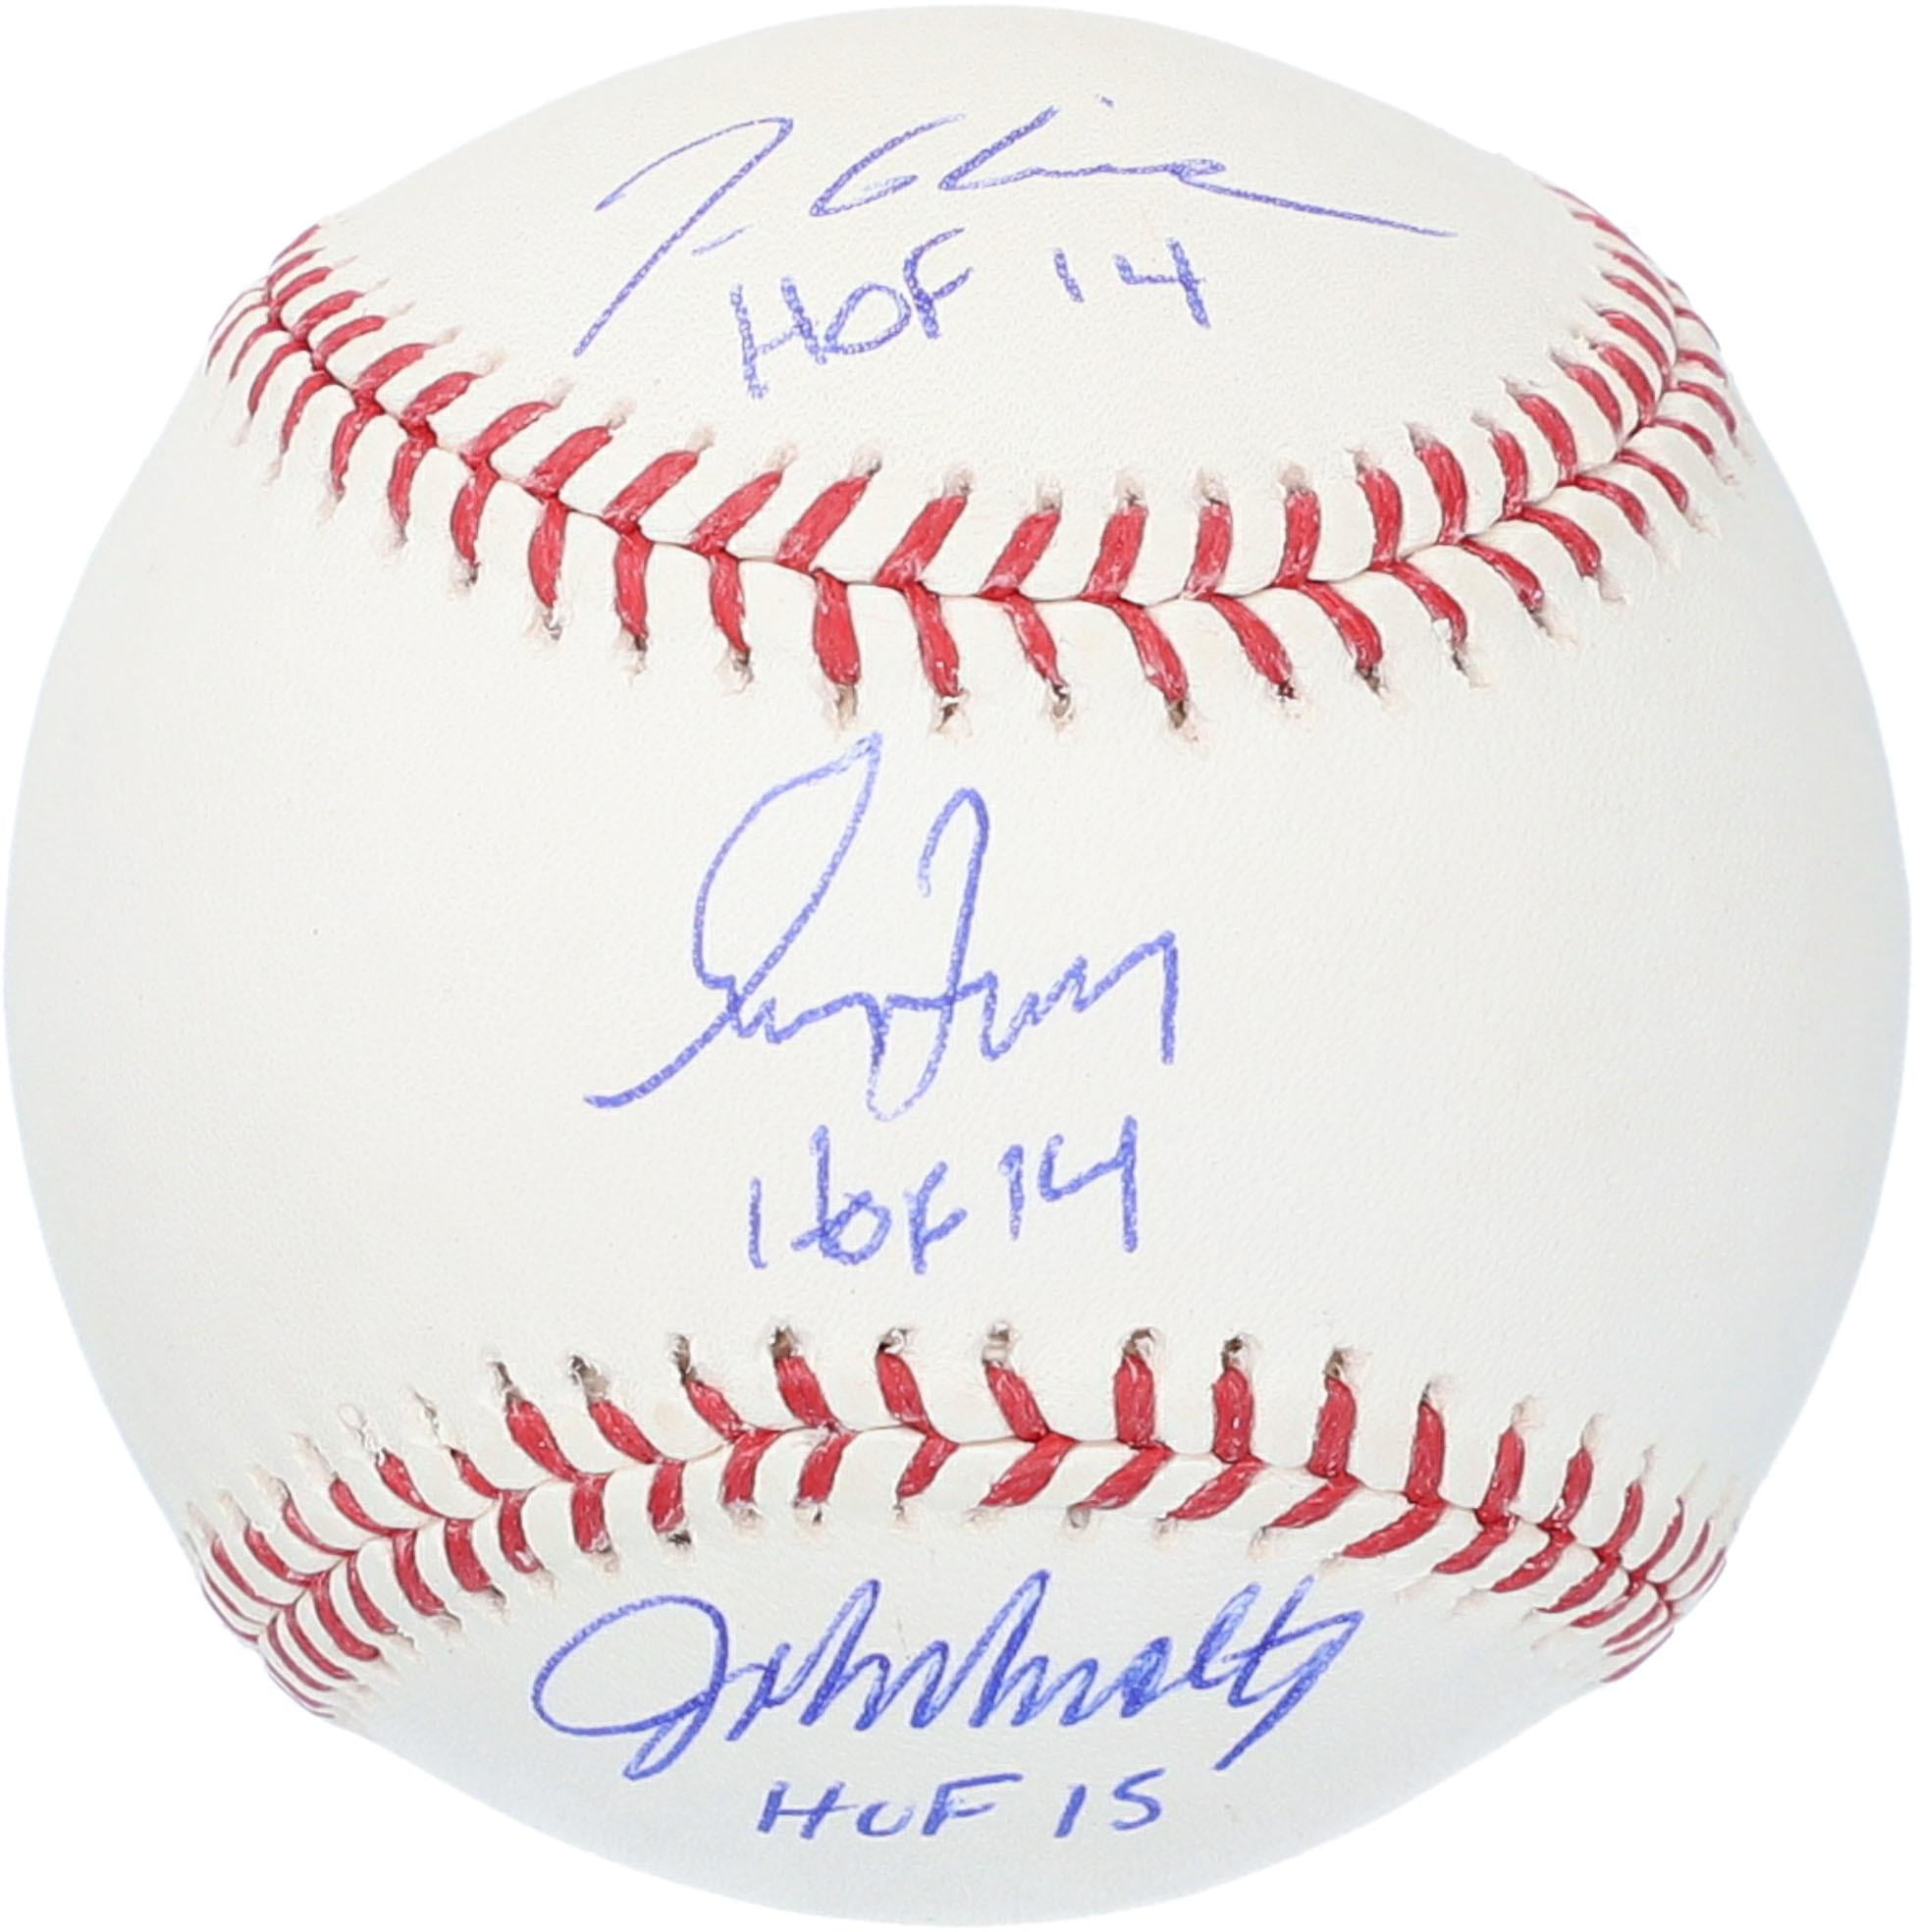 tom glavine autographed baseball